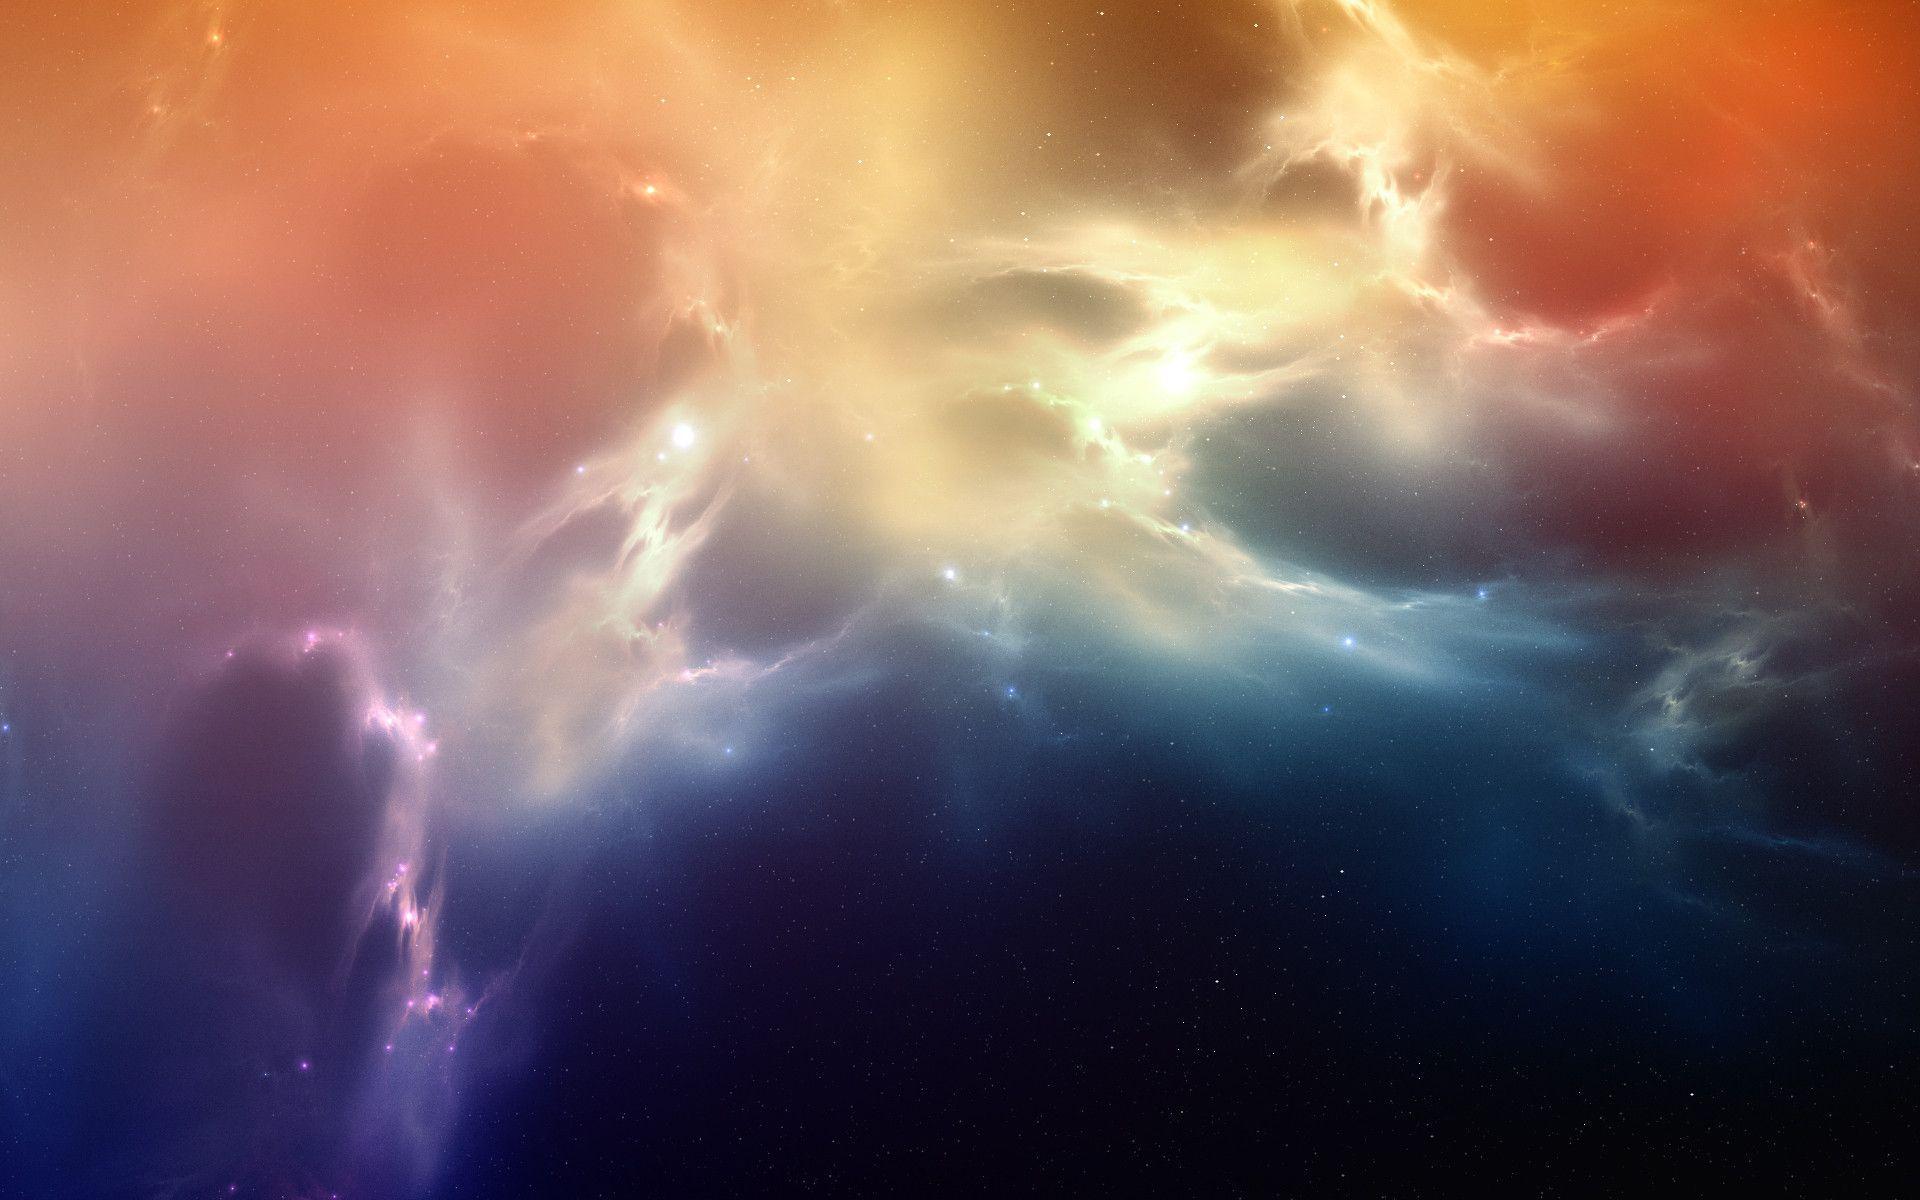 Nebula Wallpaper HD